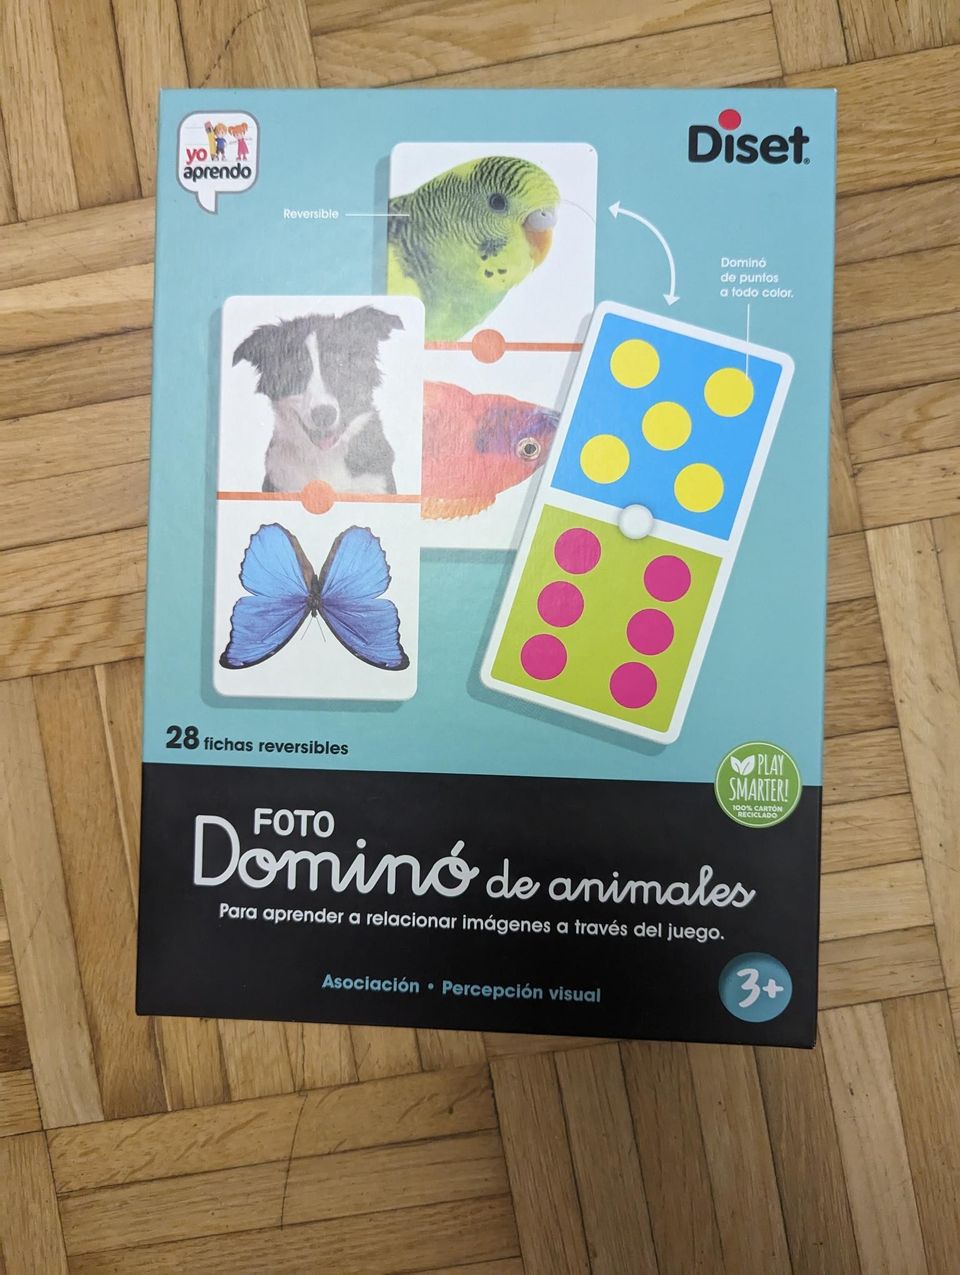 Diset Domino - photos of animals